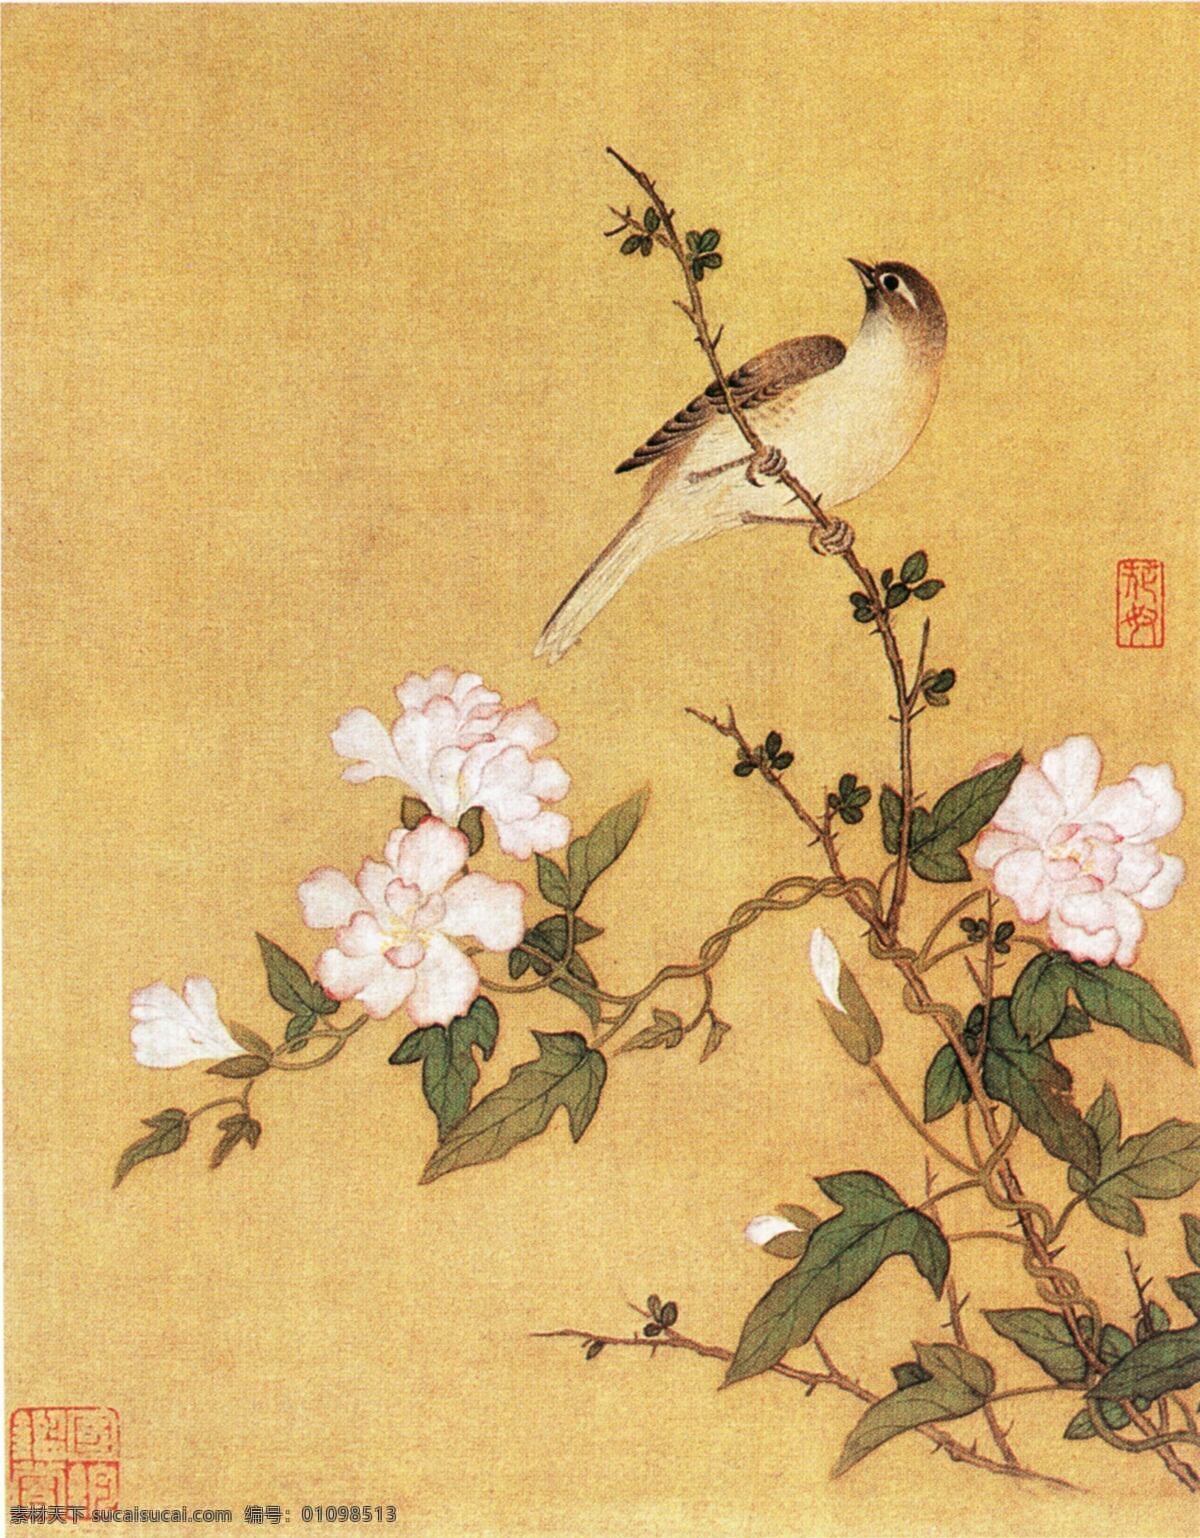 国画 黄丽鸟 花朵 中国画 花鸟 名作 艺术 书画 文化艺术 绘画书法